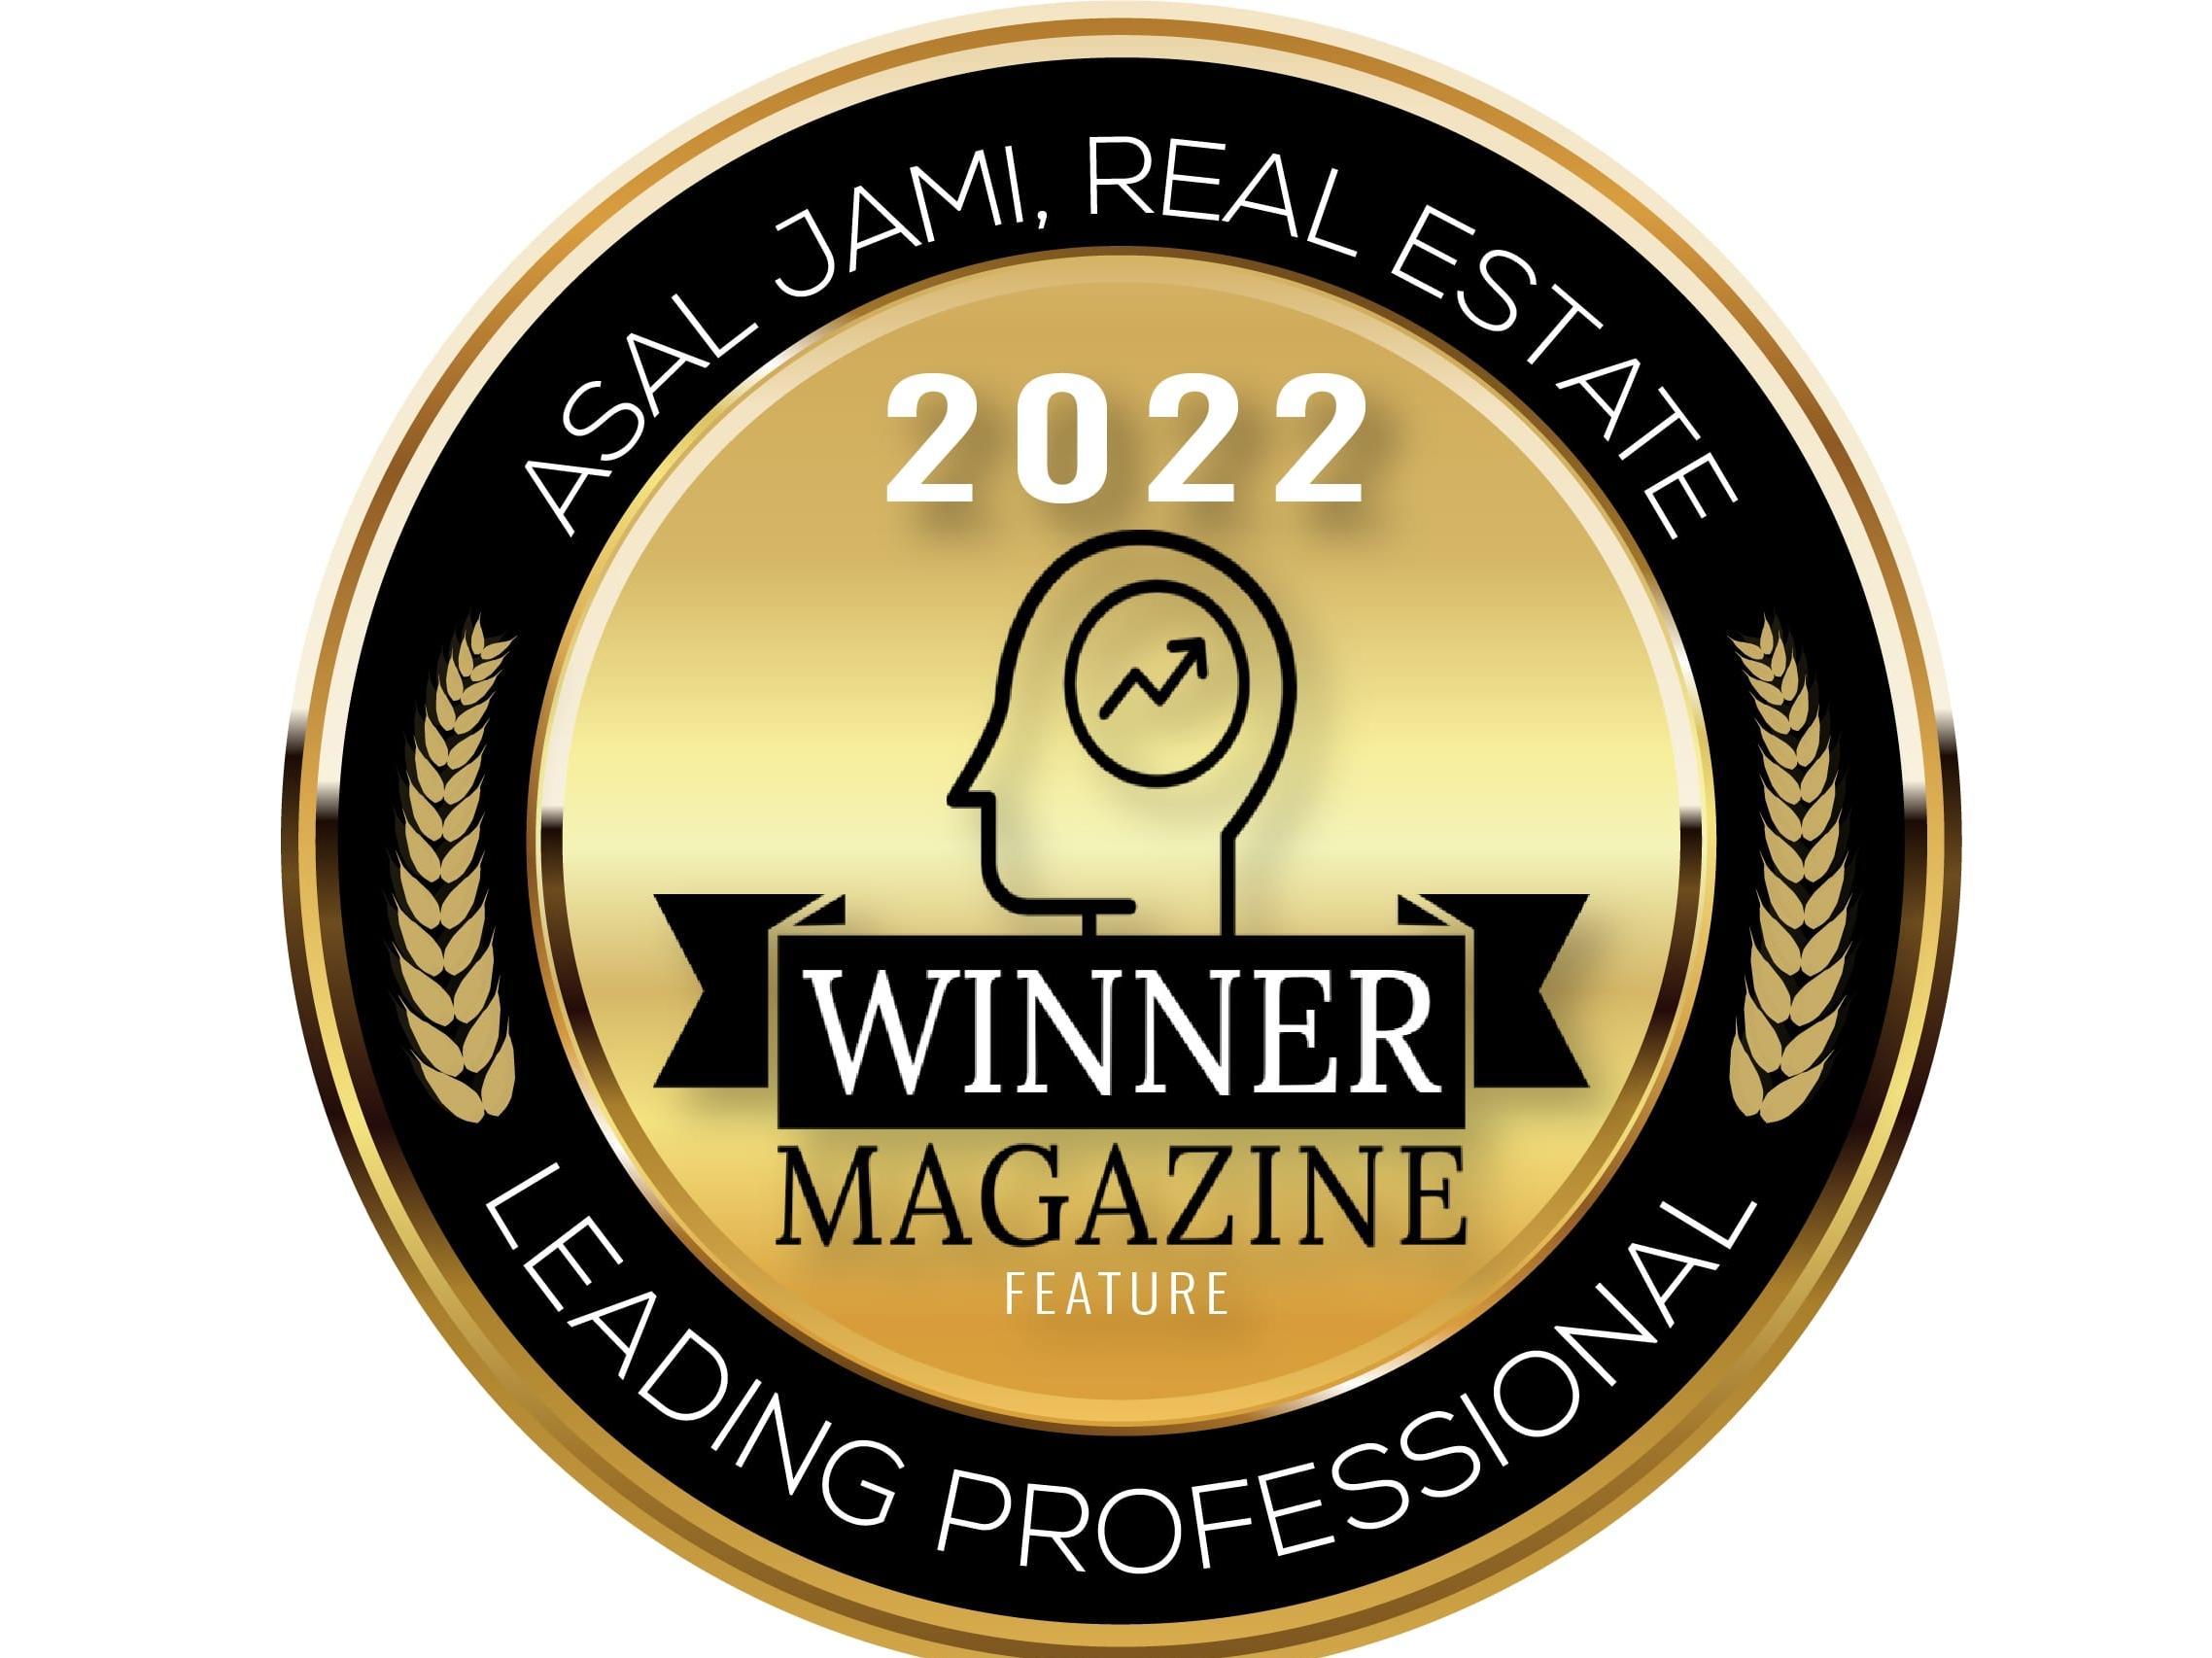 Winner Magazine Award 2022